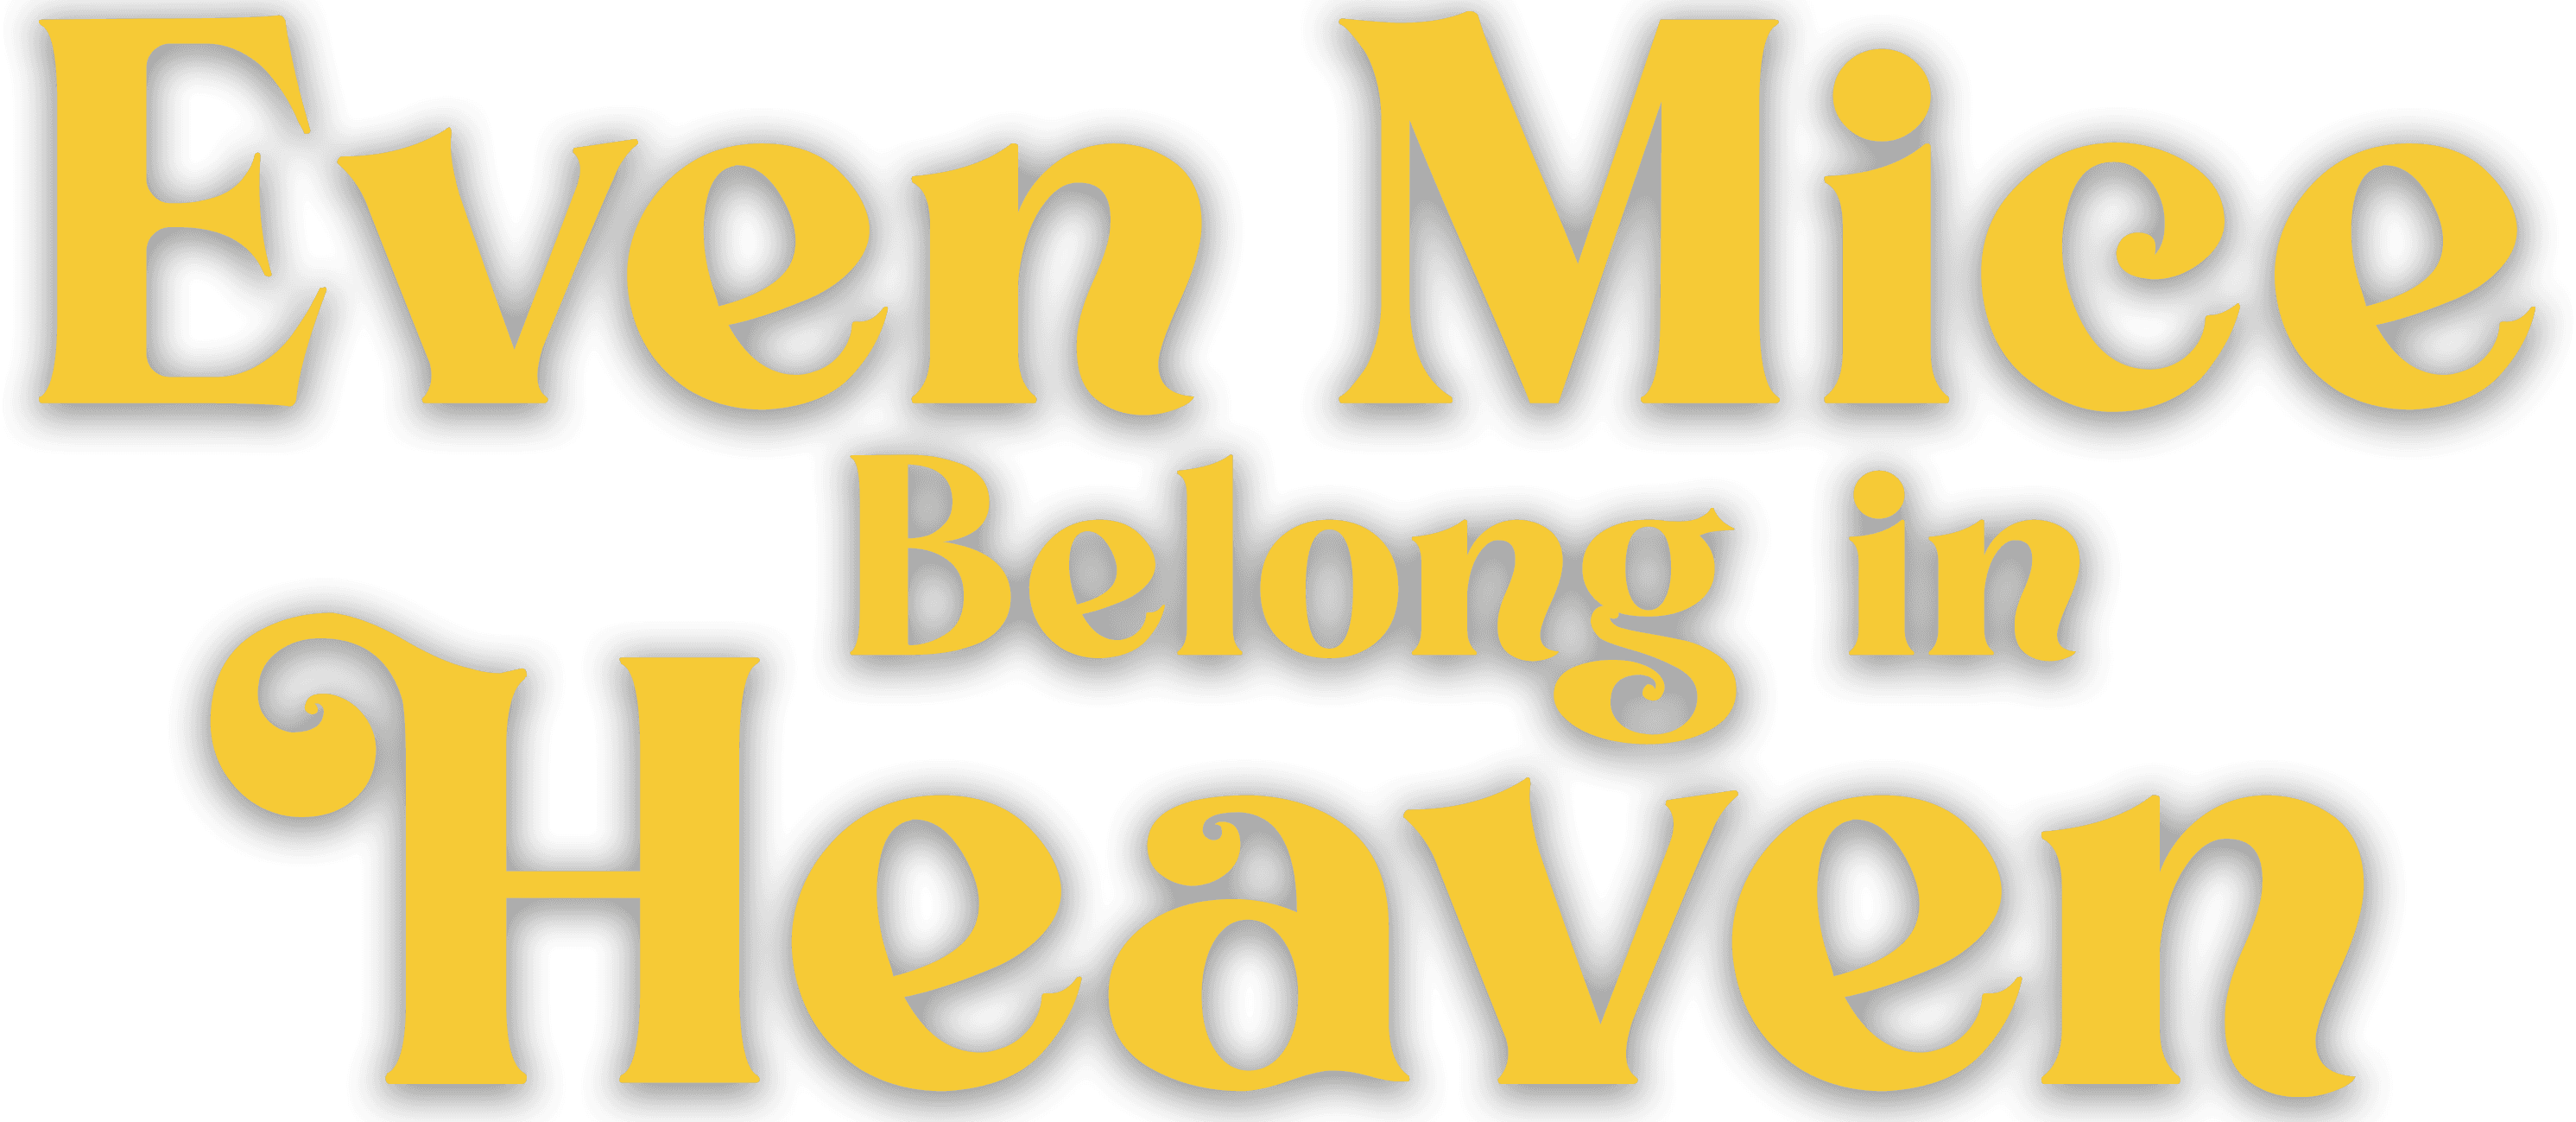 Even Mice Belong in Heaven logo